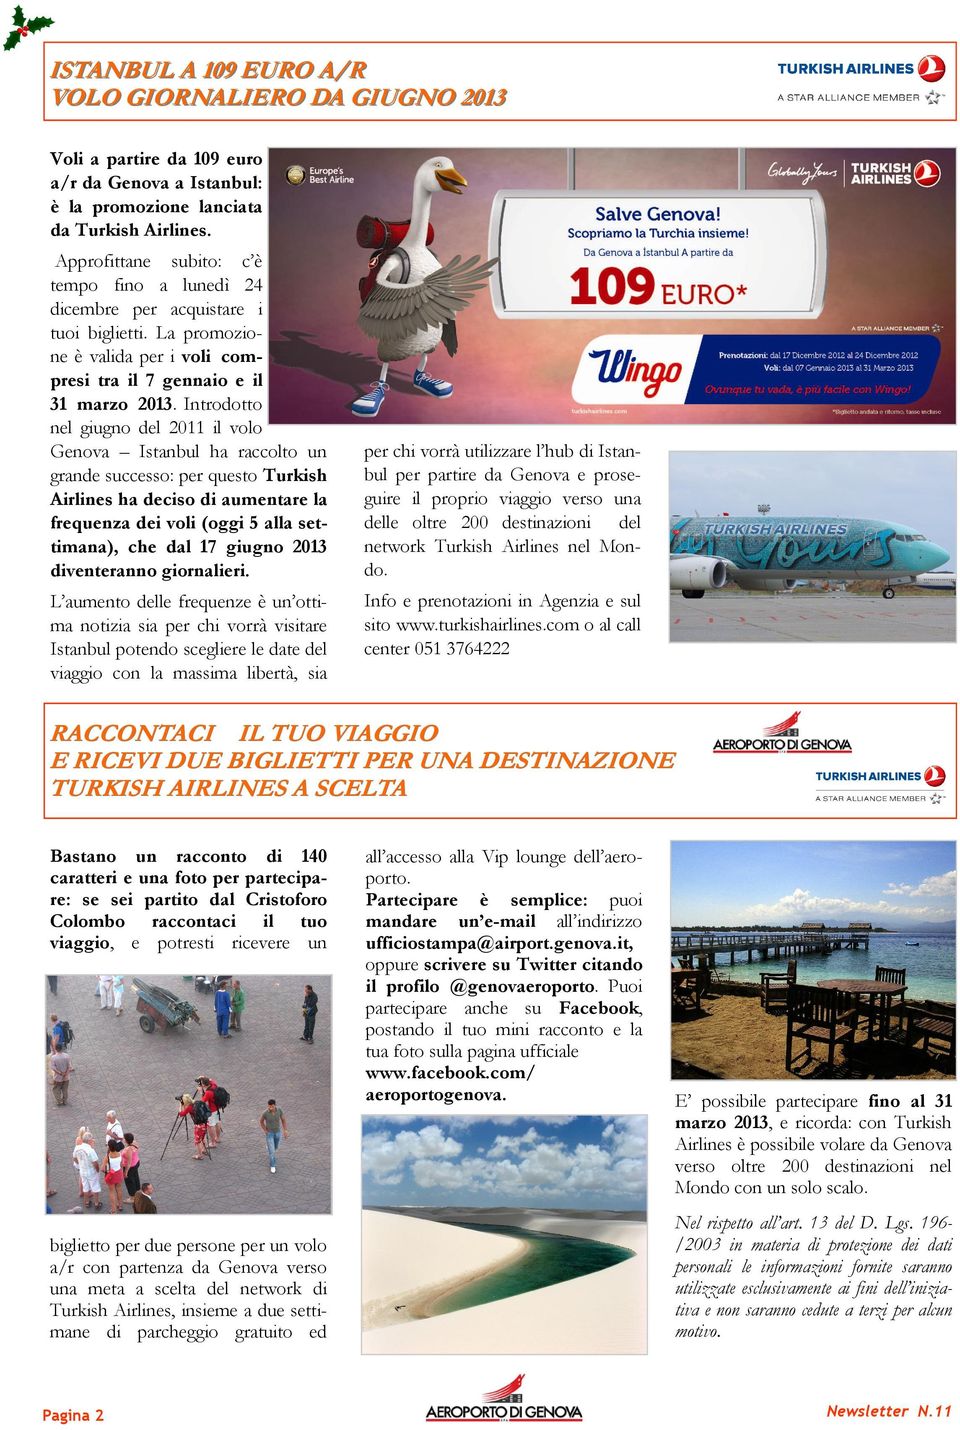 Introdotto nel giugno del 2011 il volo Genova Istanbul ha raccolto un grande successo: per questo Turkish Airlines ha deciso di aumentare la frequenza dei voli (oggi 5 alla settimana), che dal 17